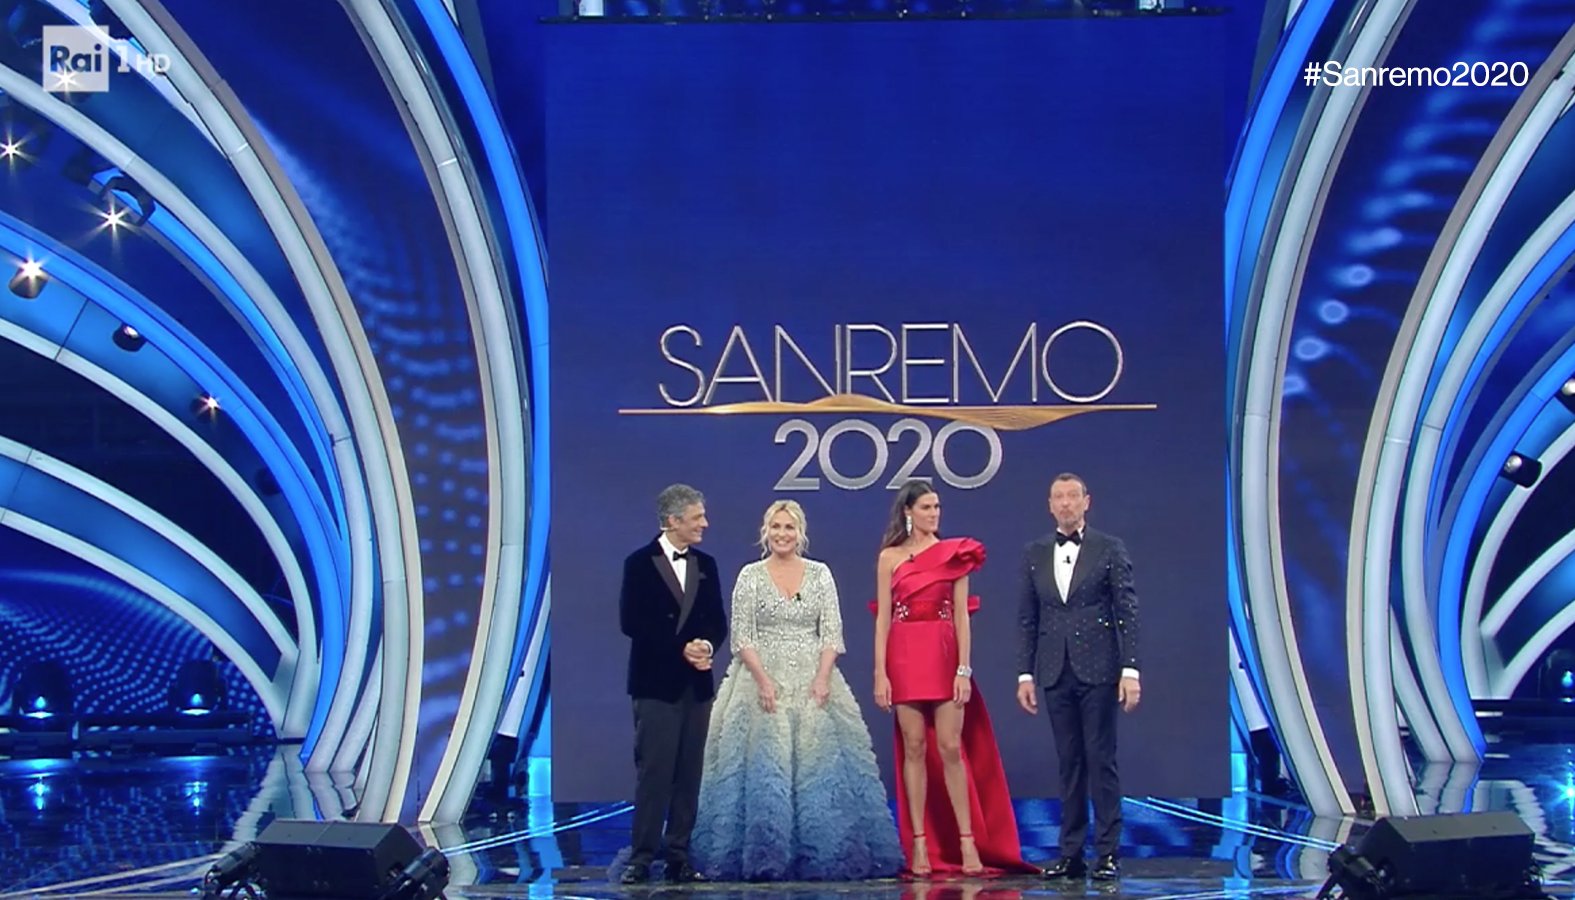 Sanremo, 9.5 milioni di telespettatori e 53% share per la quarta serata